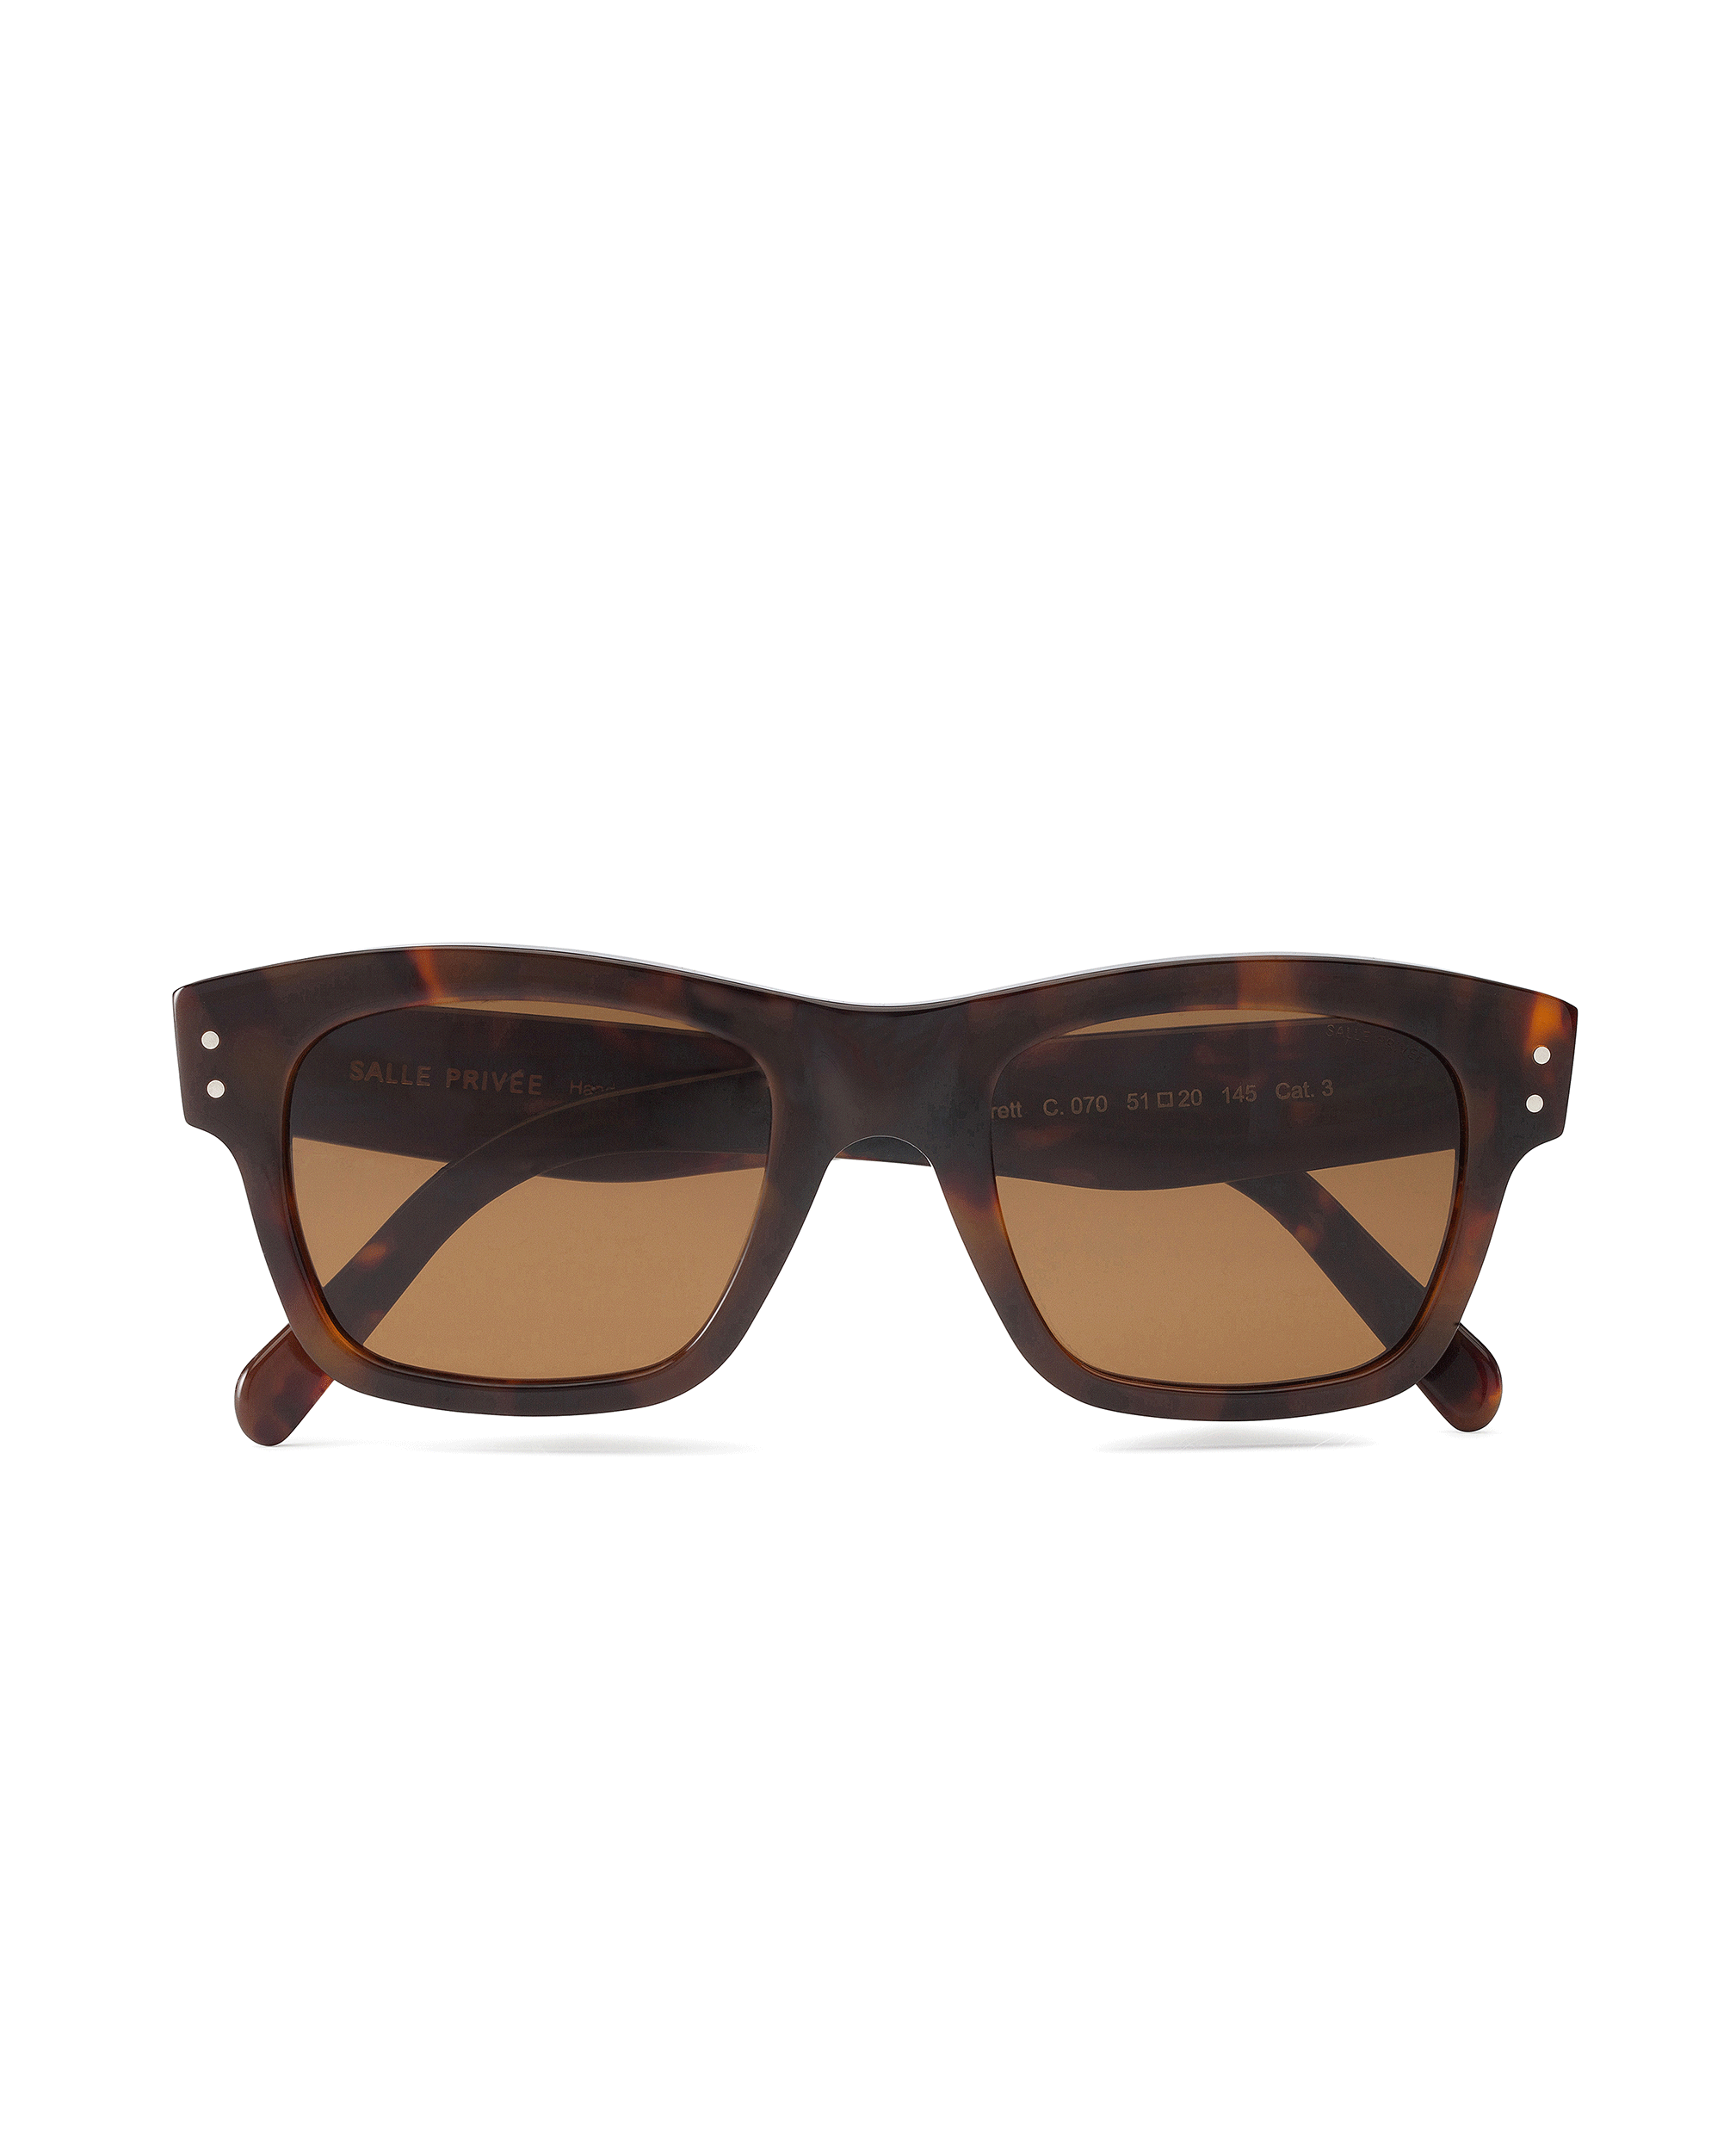 BRETT Sunglasses Tortoise - Brown